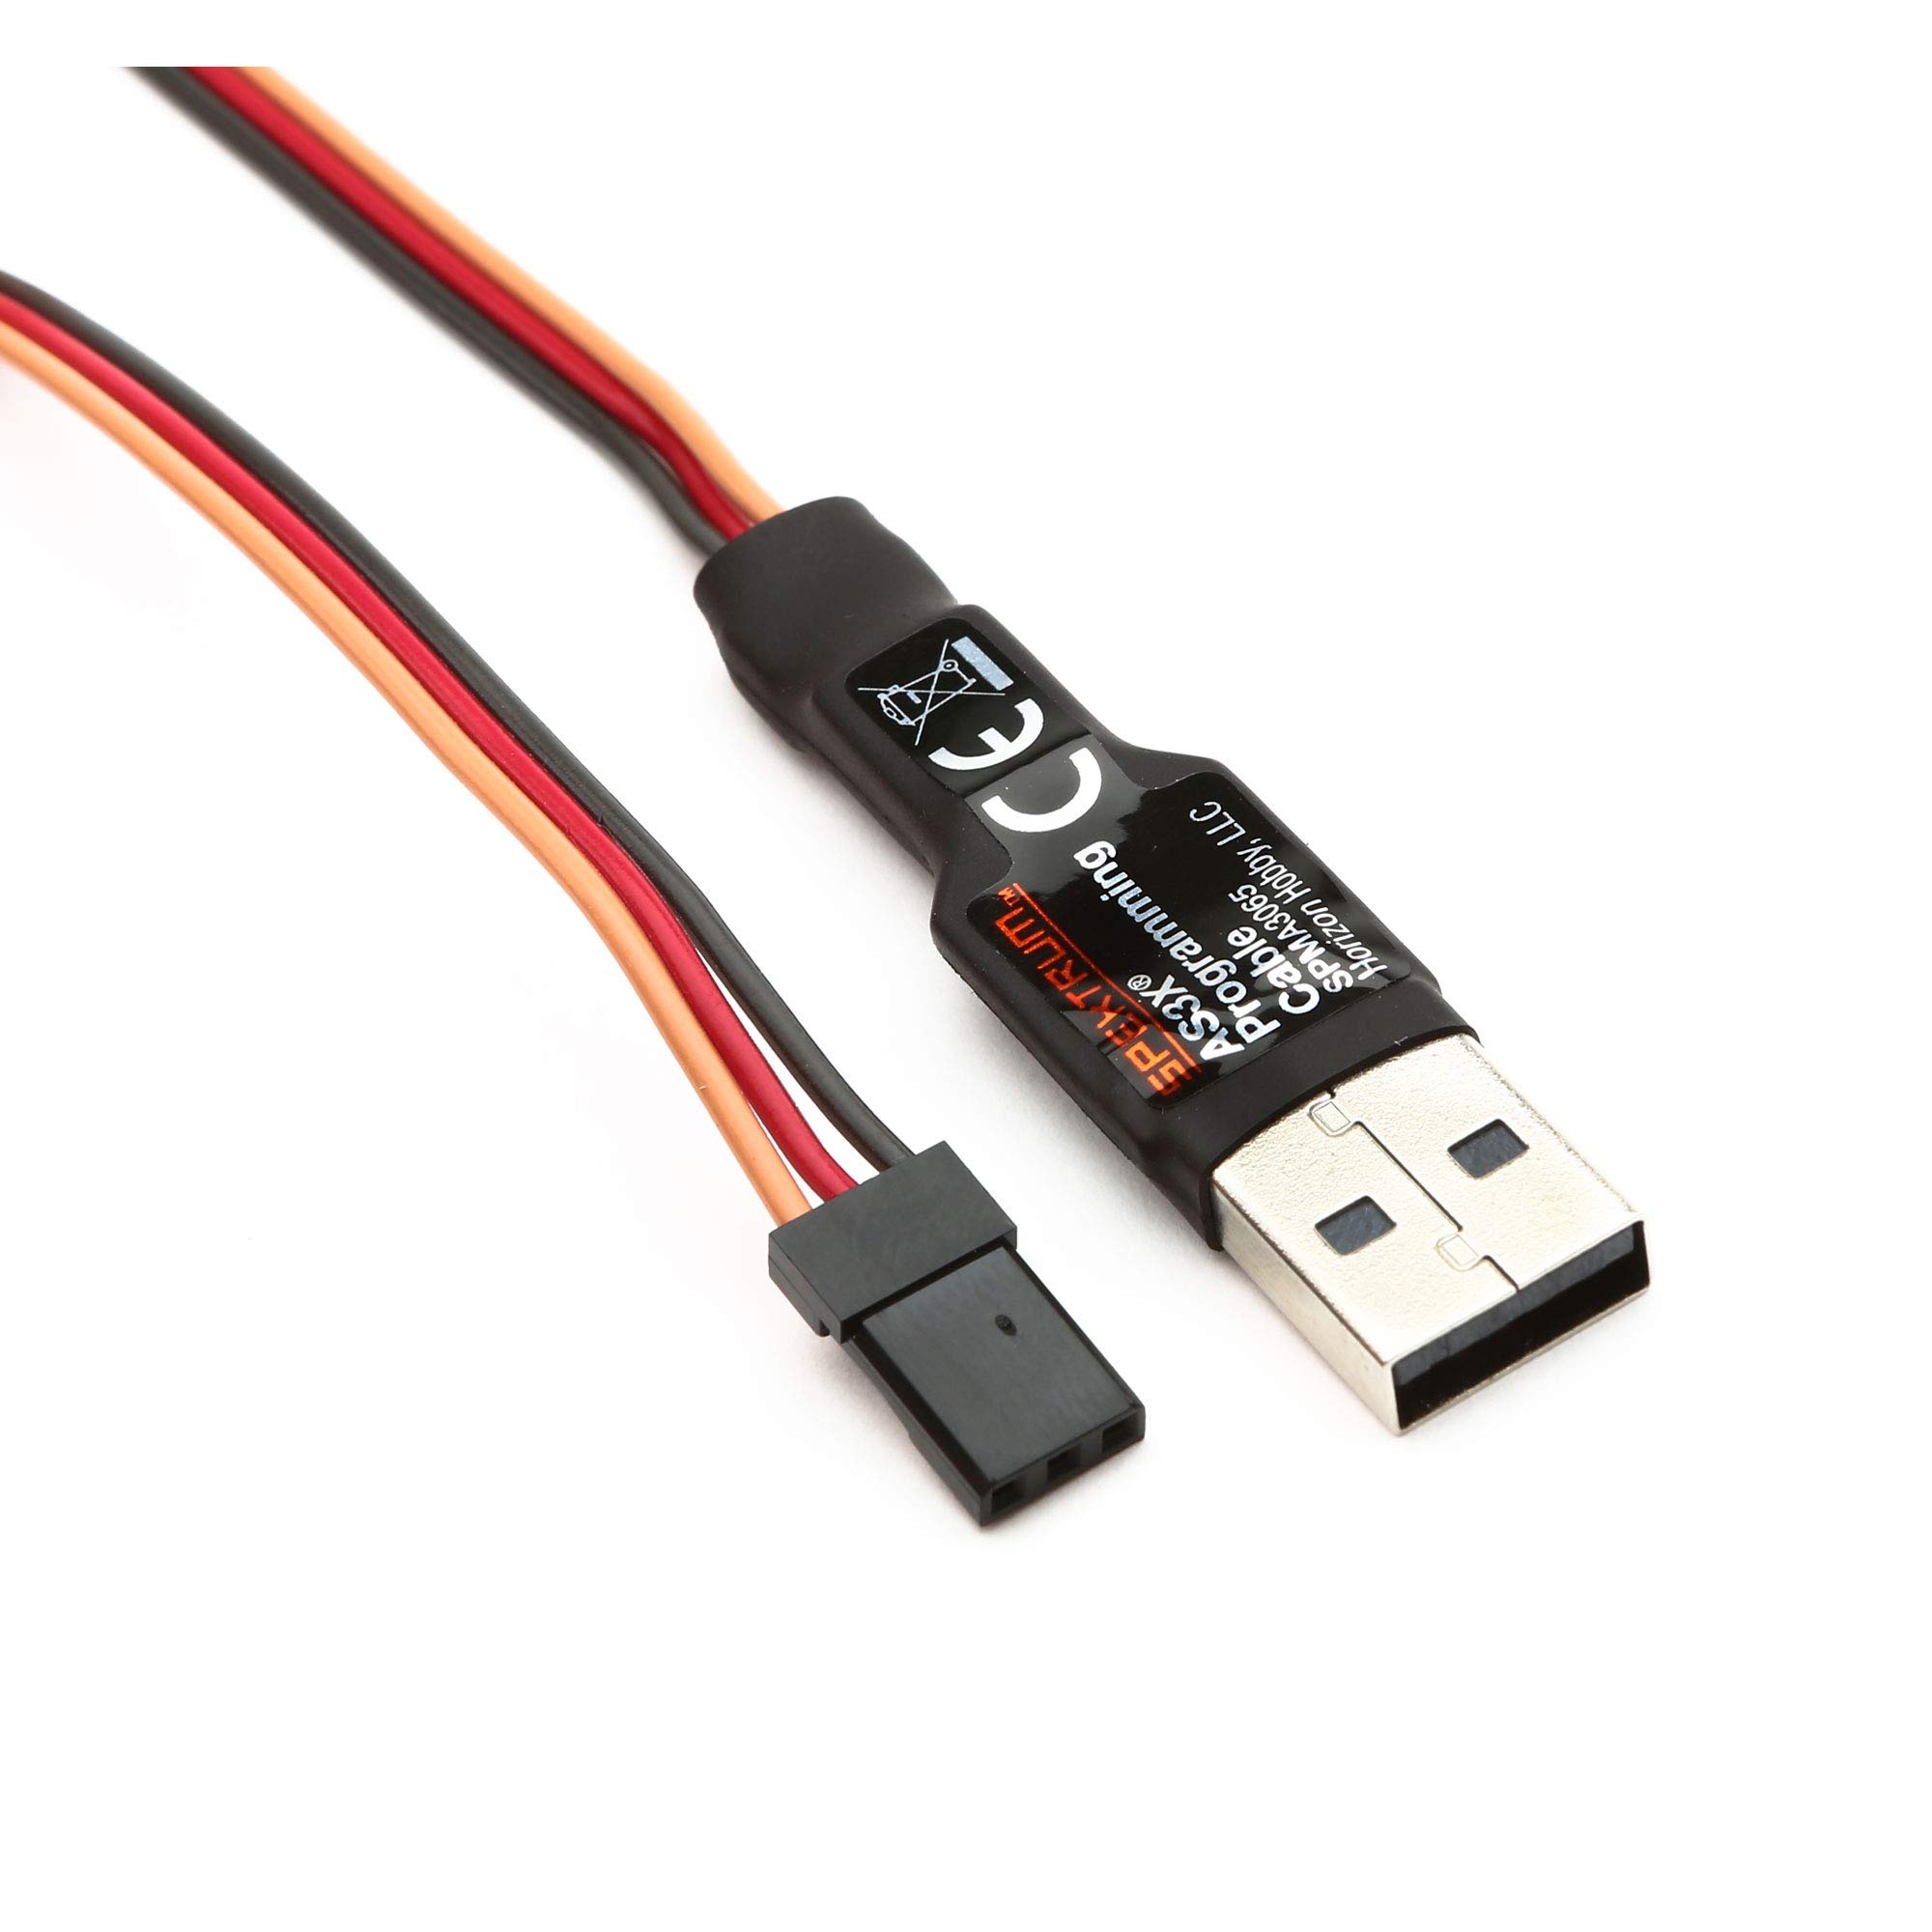 Sender/Empfänger Programmierkabel: USB-Schnittstelle